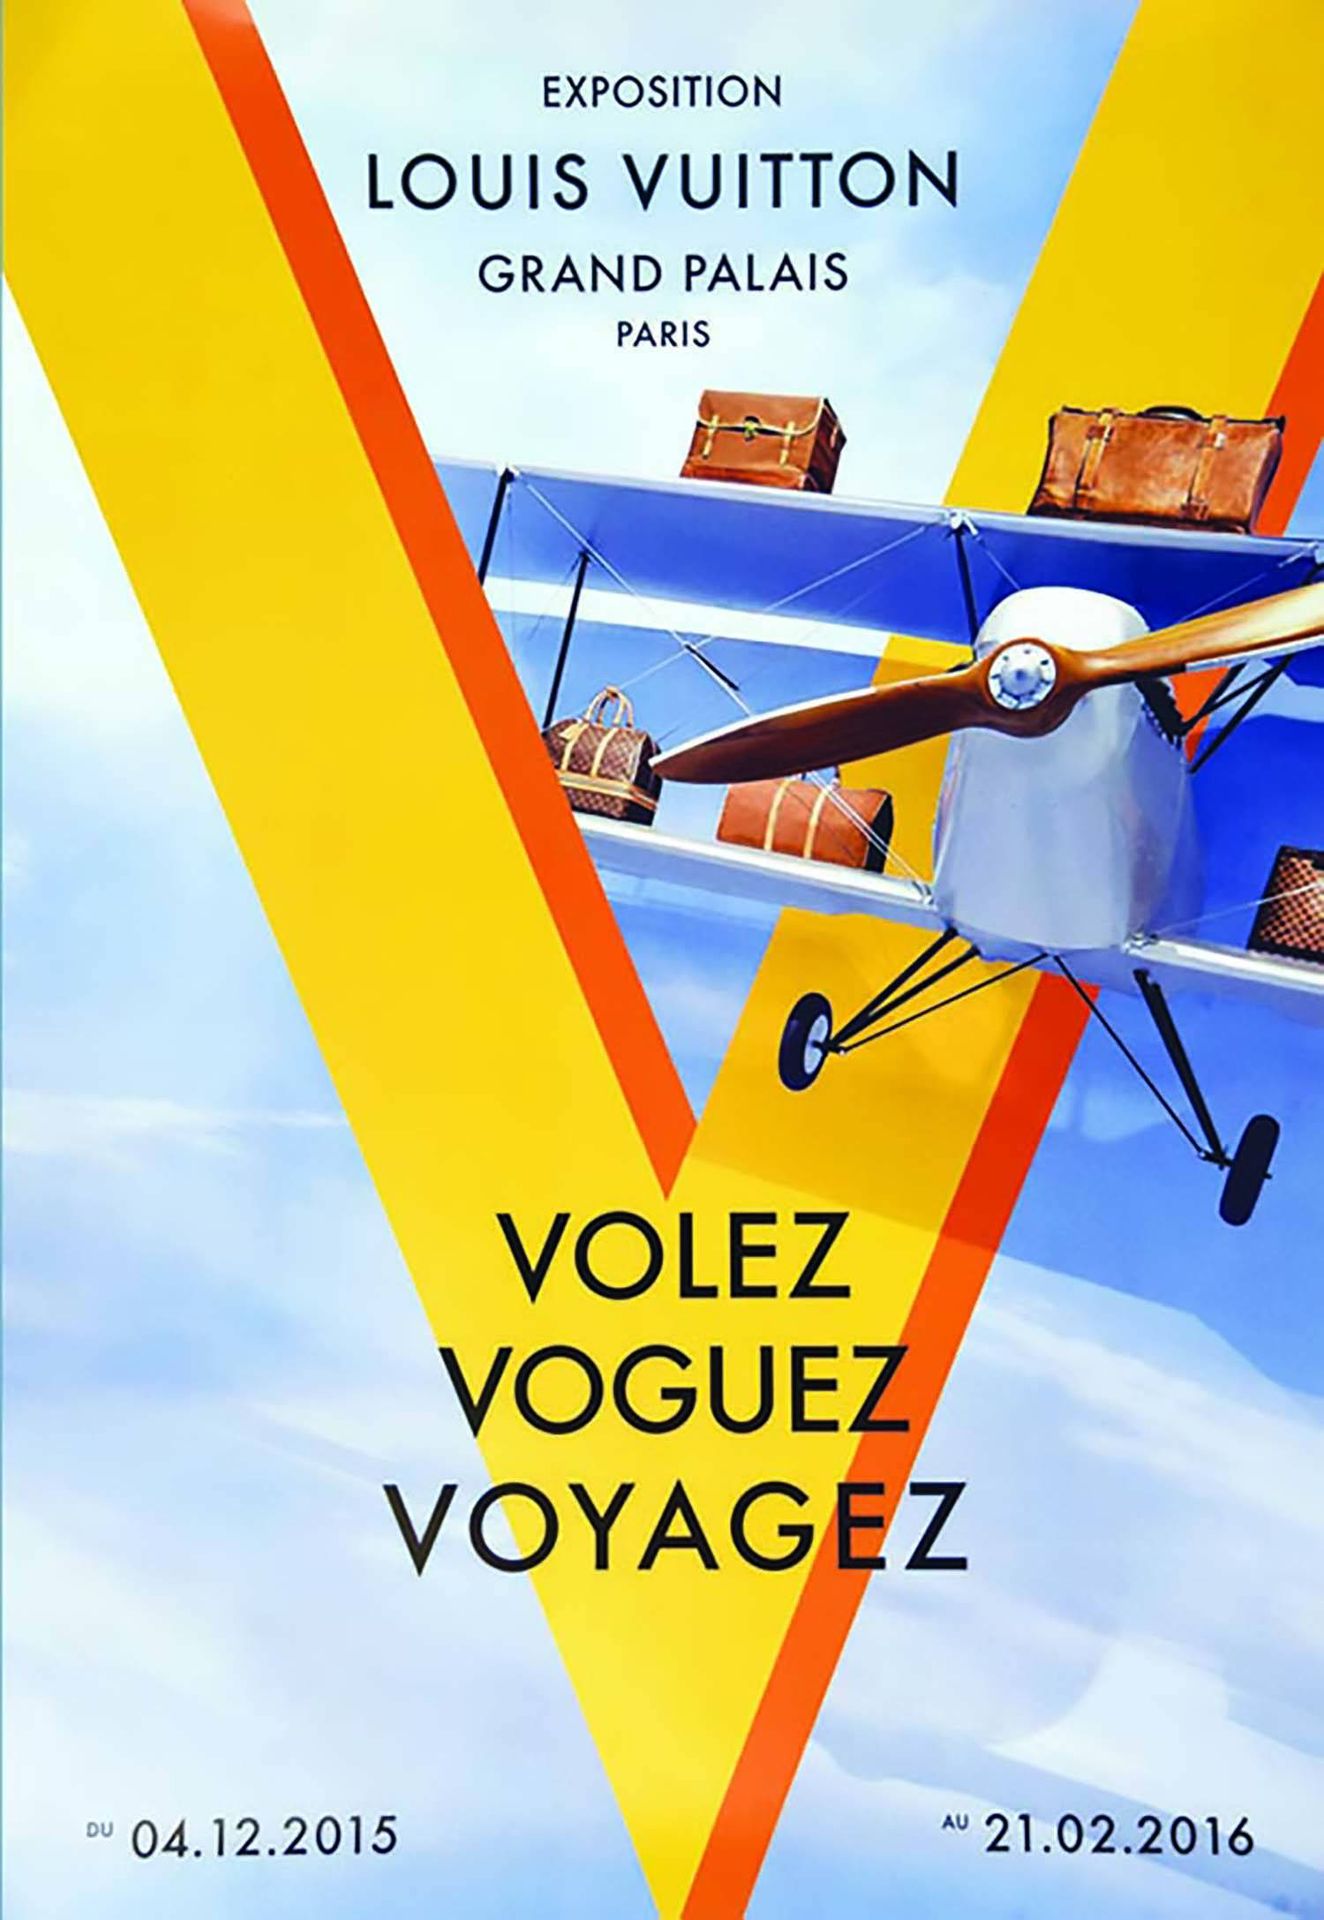 Poster LOUIS VUITTON expo Volez Voguez Voyagez model A…